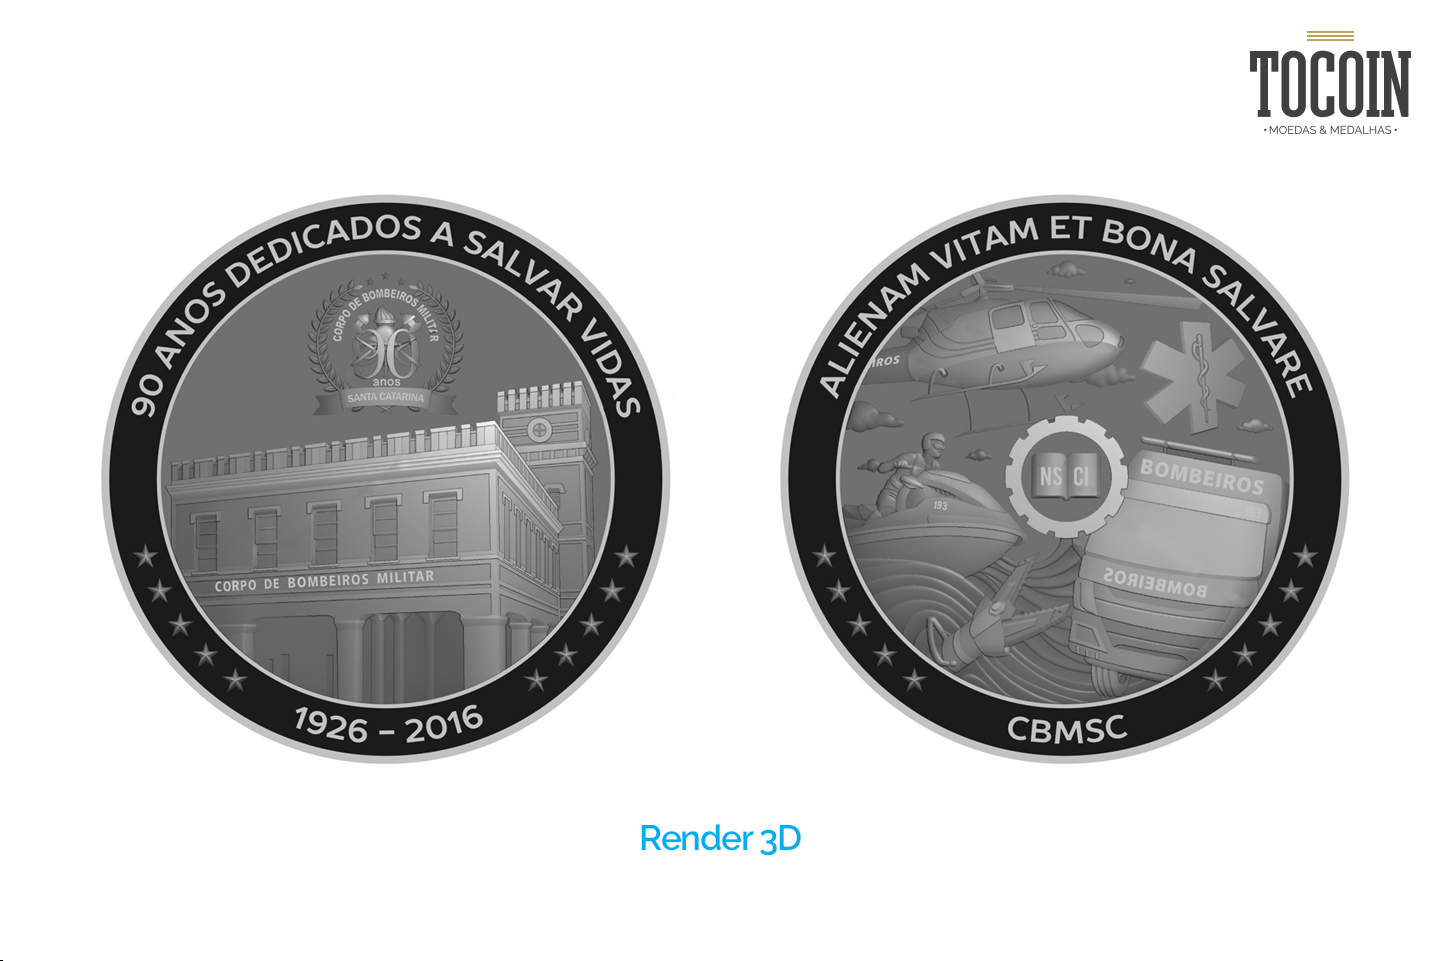 Arte final da moeda do corpo de bombeiros de SC - CBMSC